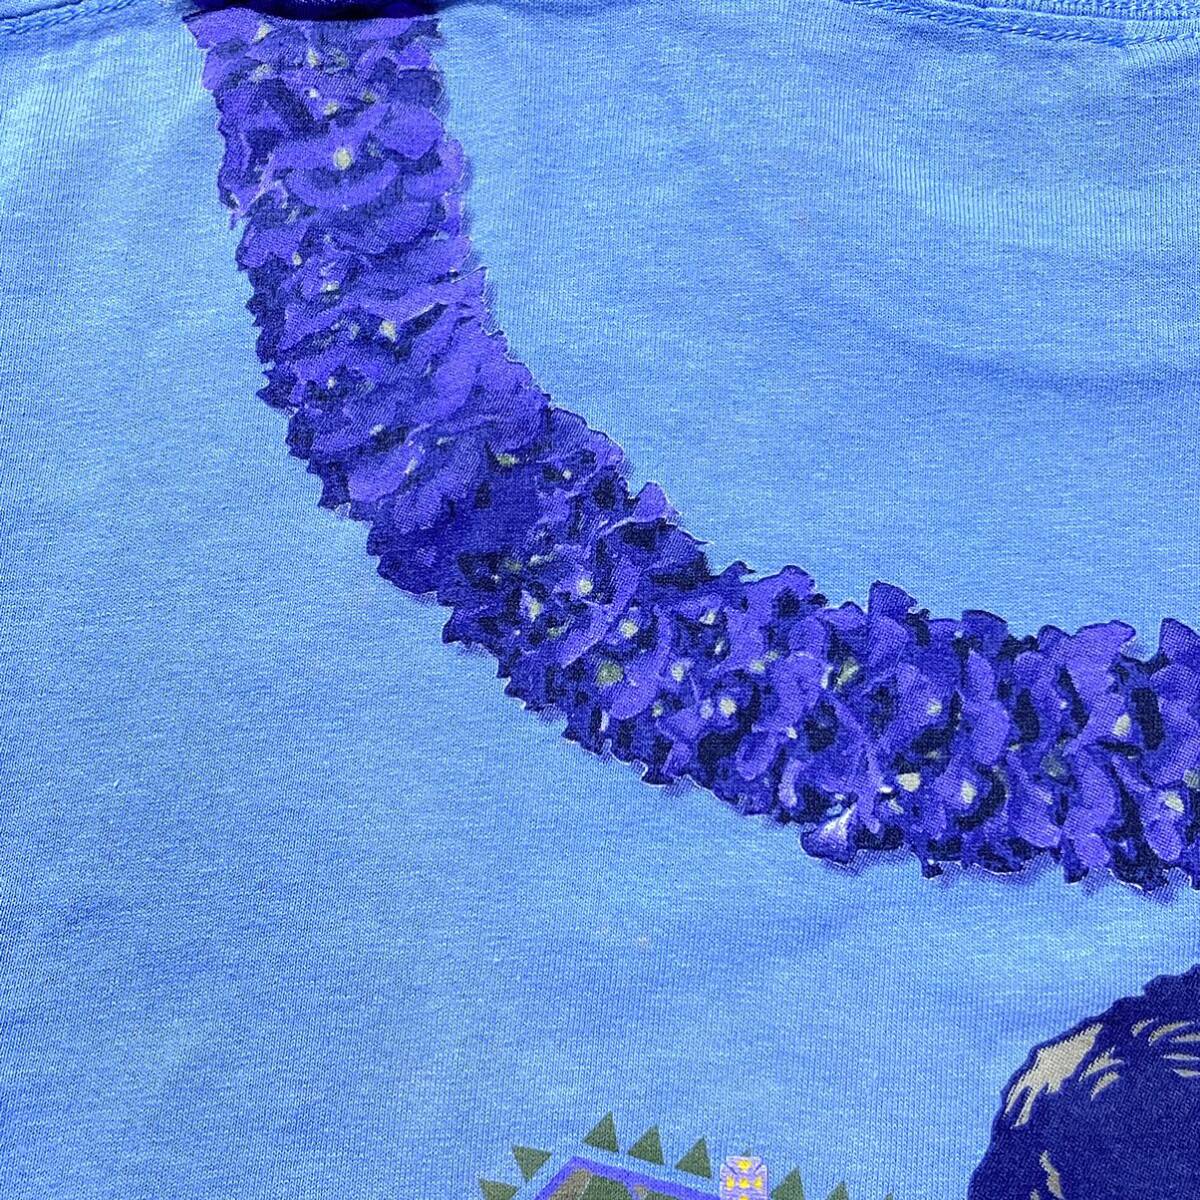 第47回メリーモナークフェスティバル 記念Tシャツ2010年 水色 Sサイズ フラダンス ハワイ カラカウア王_画像6